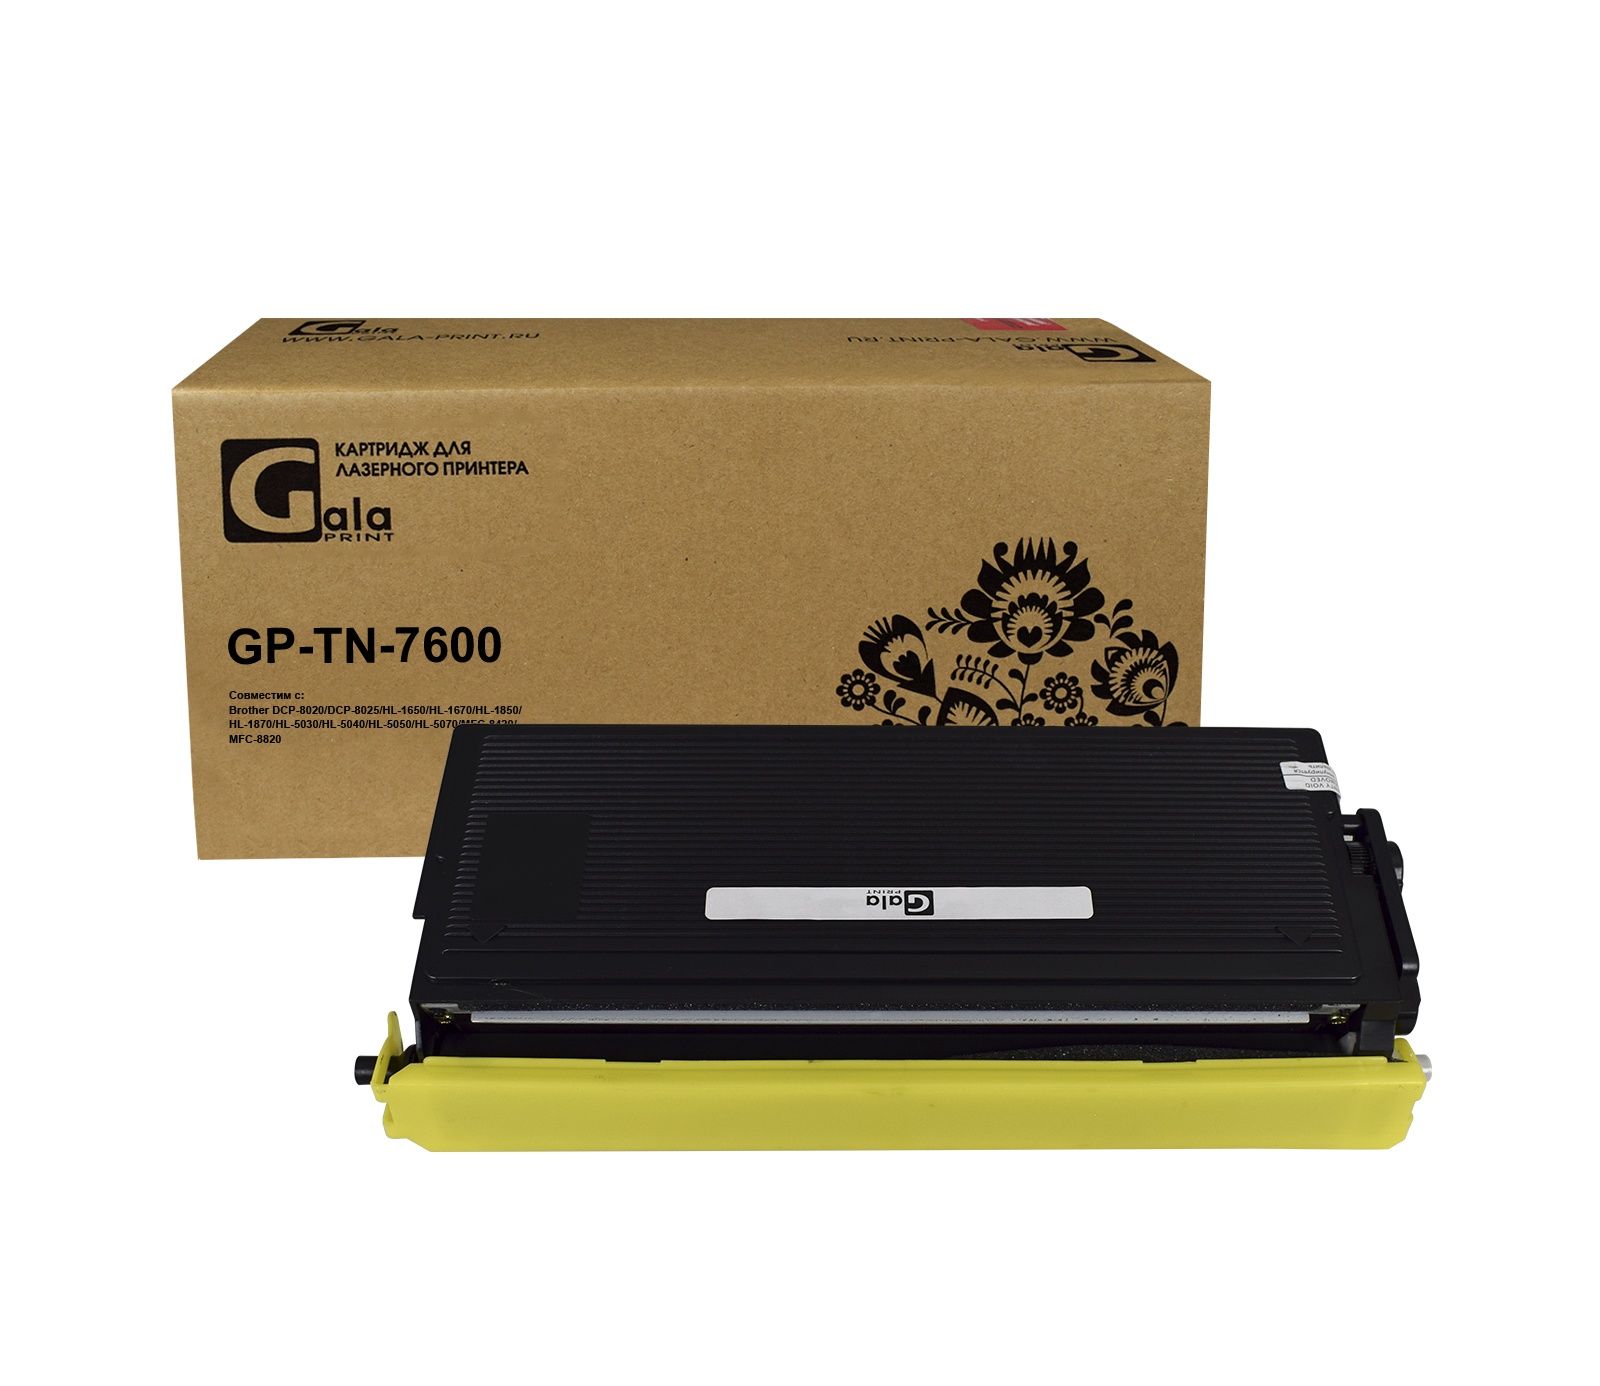 Картридж GP-TN-7600 для принтеров Brother DCP-8020/DCP-8025/HL-1650/HL-1670/HL-1850/HL-1870/HL-5030/HL-5040/HL-5050/HL-5070/MFC-8420/MFC-8820 6500 копий GalaPrint